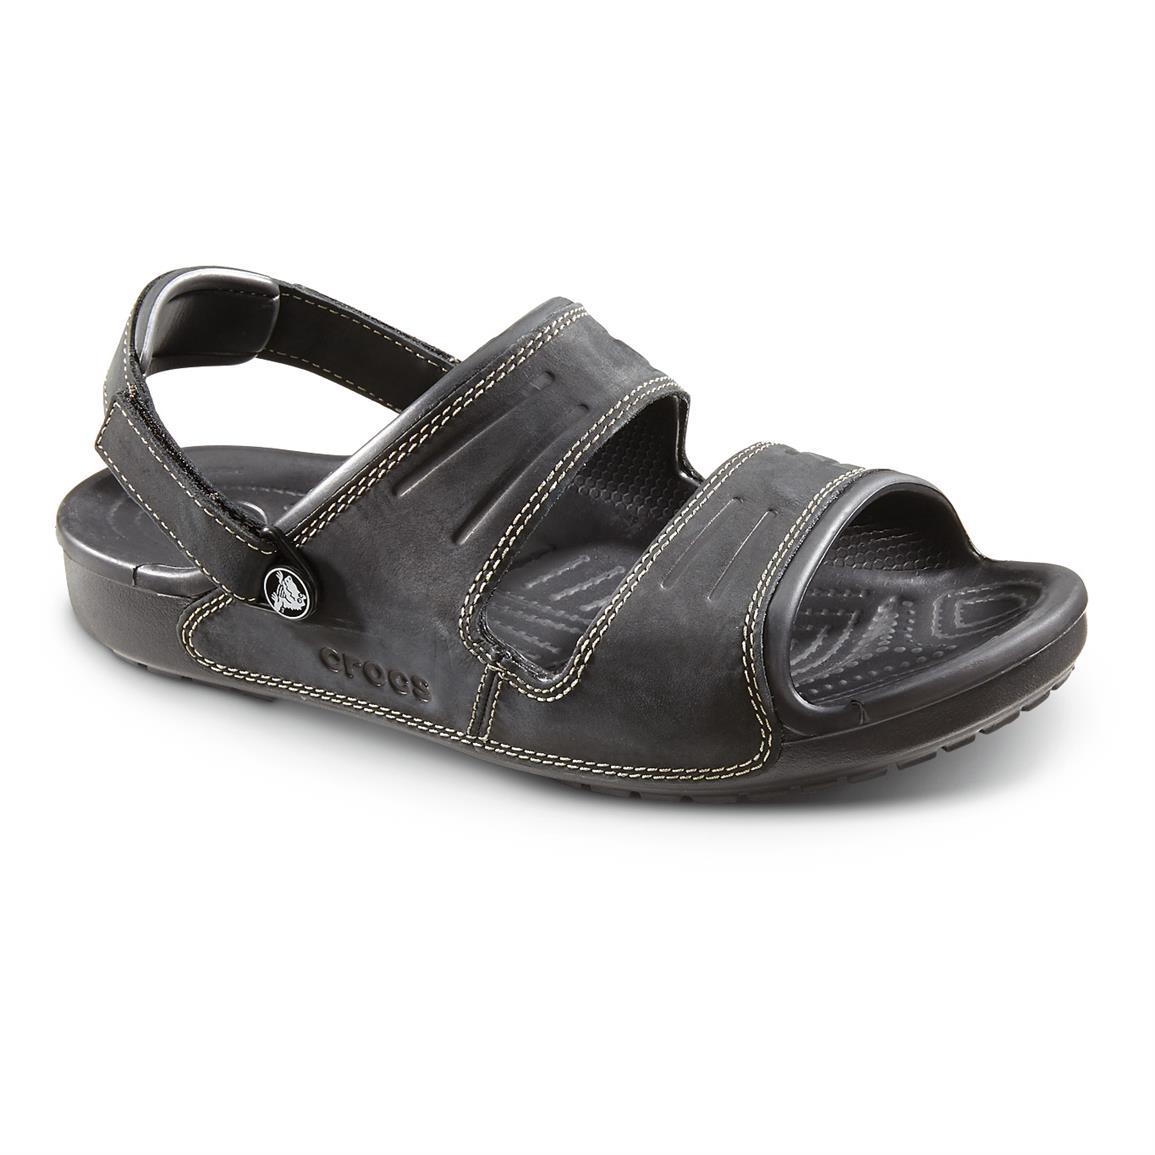 crocs 2 strap sandals